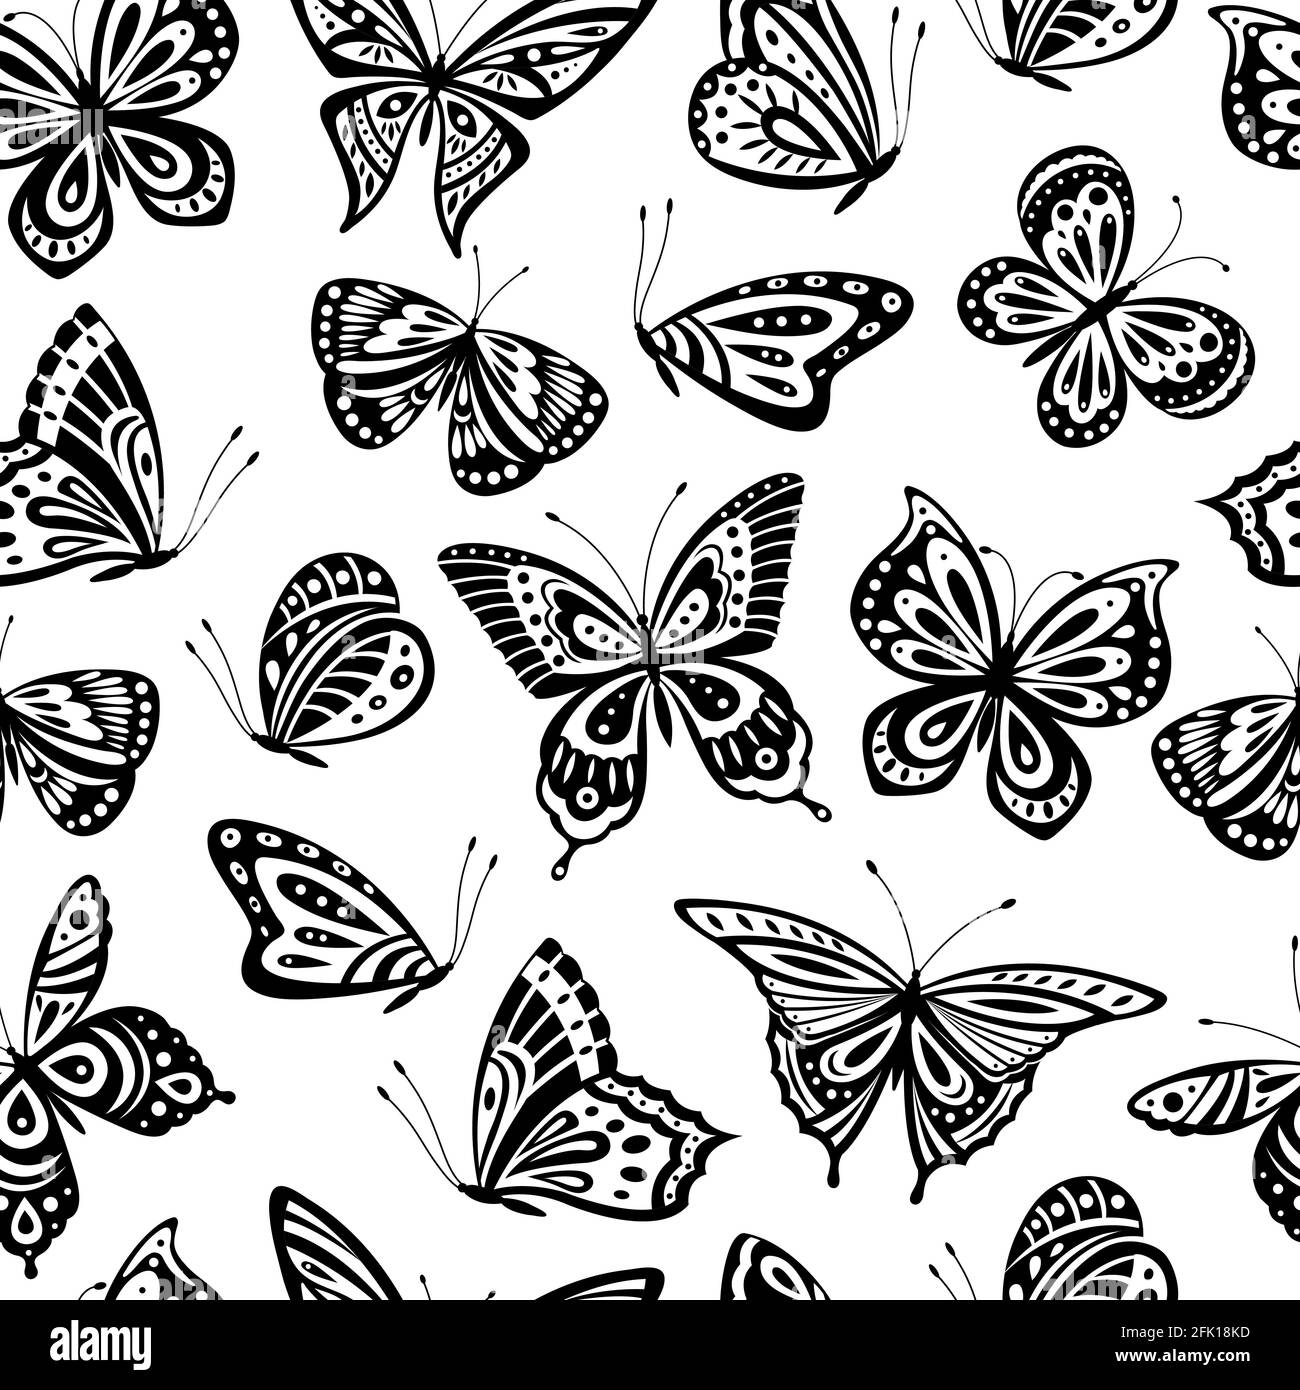 Schmetterlingsmuster. Romantische fliegende Schmetterling nahtlose Textur. Abstrakt schöne Frühlingstapete. Textil- oder Innenvektorhintergrund Stock Vektor